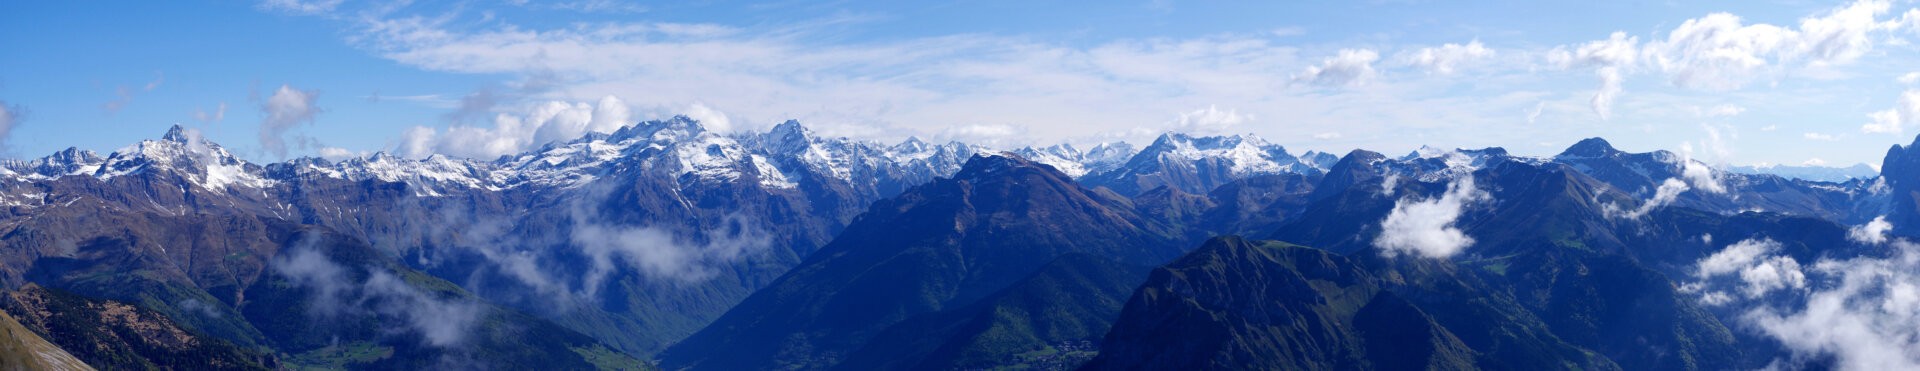 11 - Escursione monte Vaccaro panorama dalla vetta